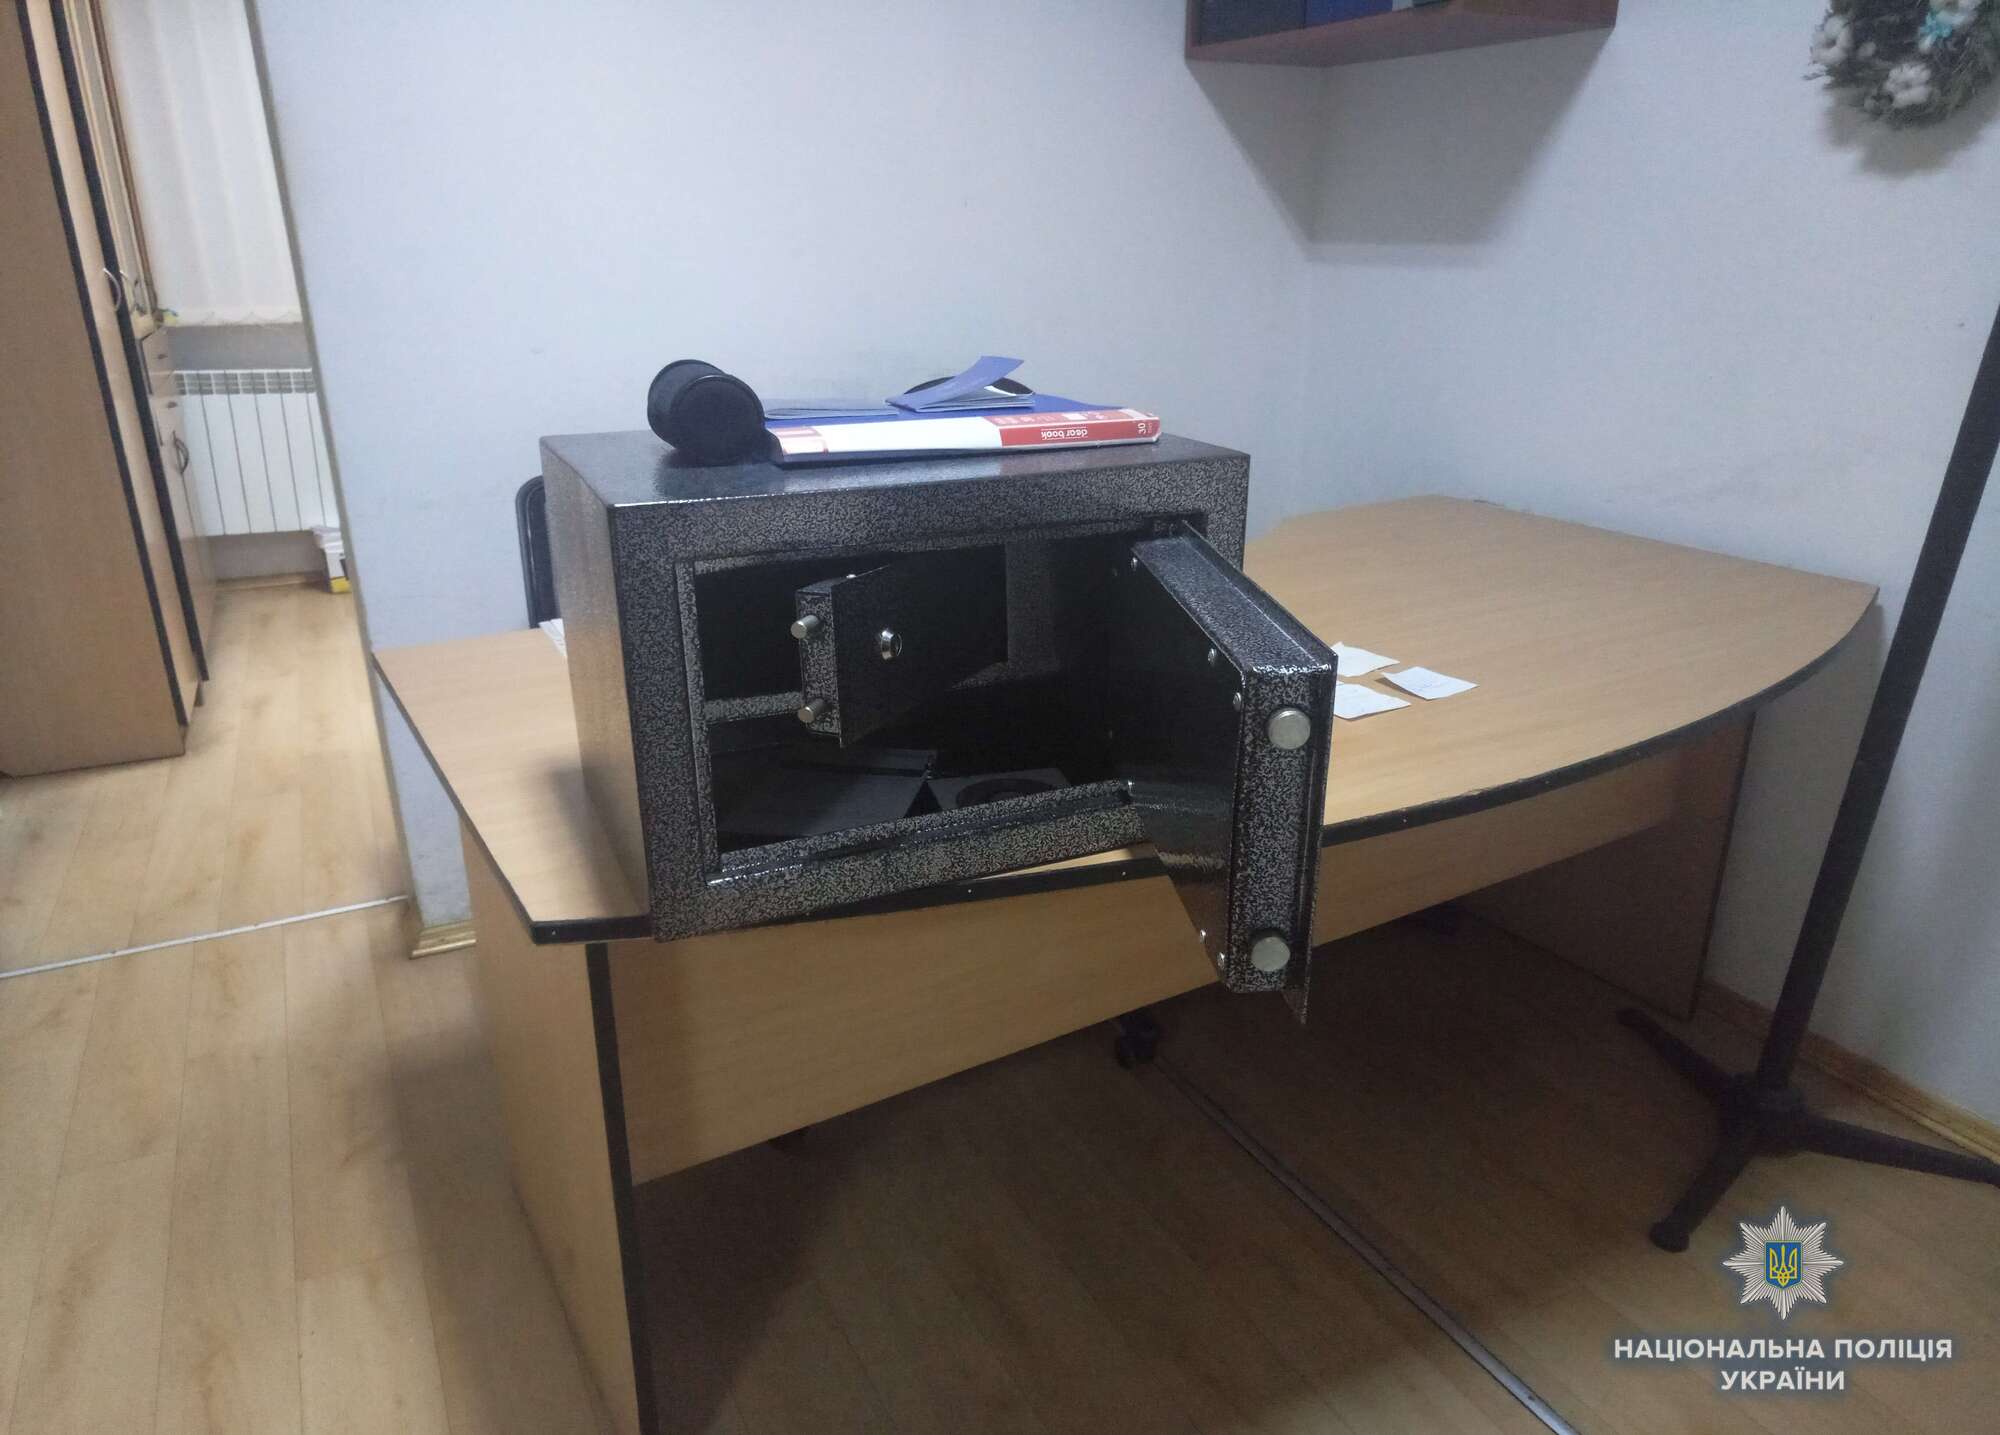 Связали охранника и вскрыли сейфы: в Киеве произошло вооруженное ограбление